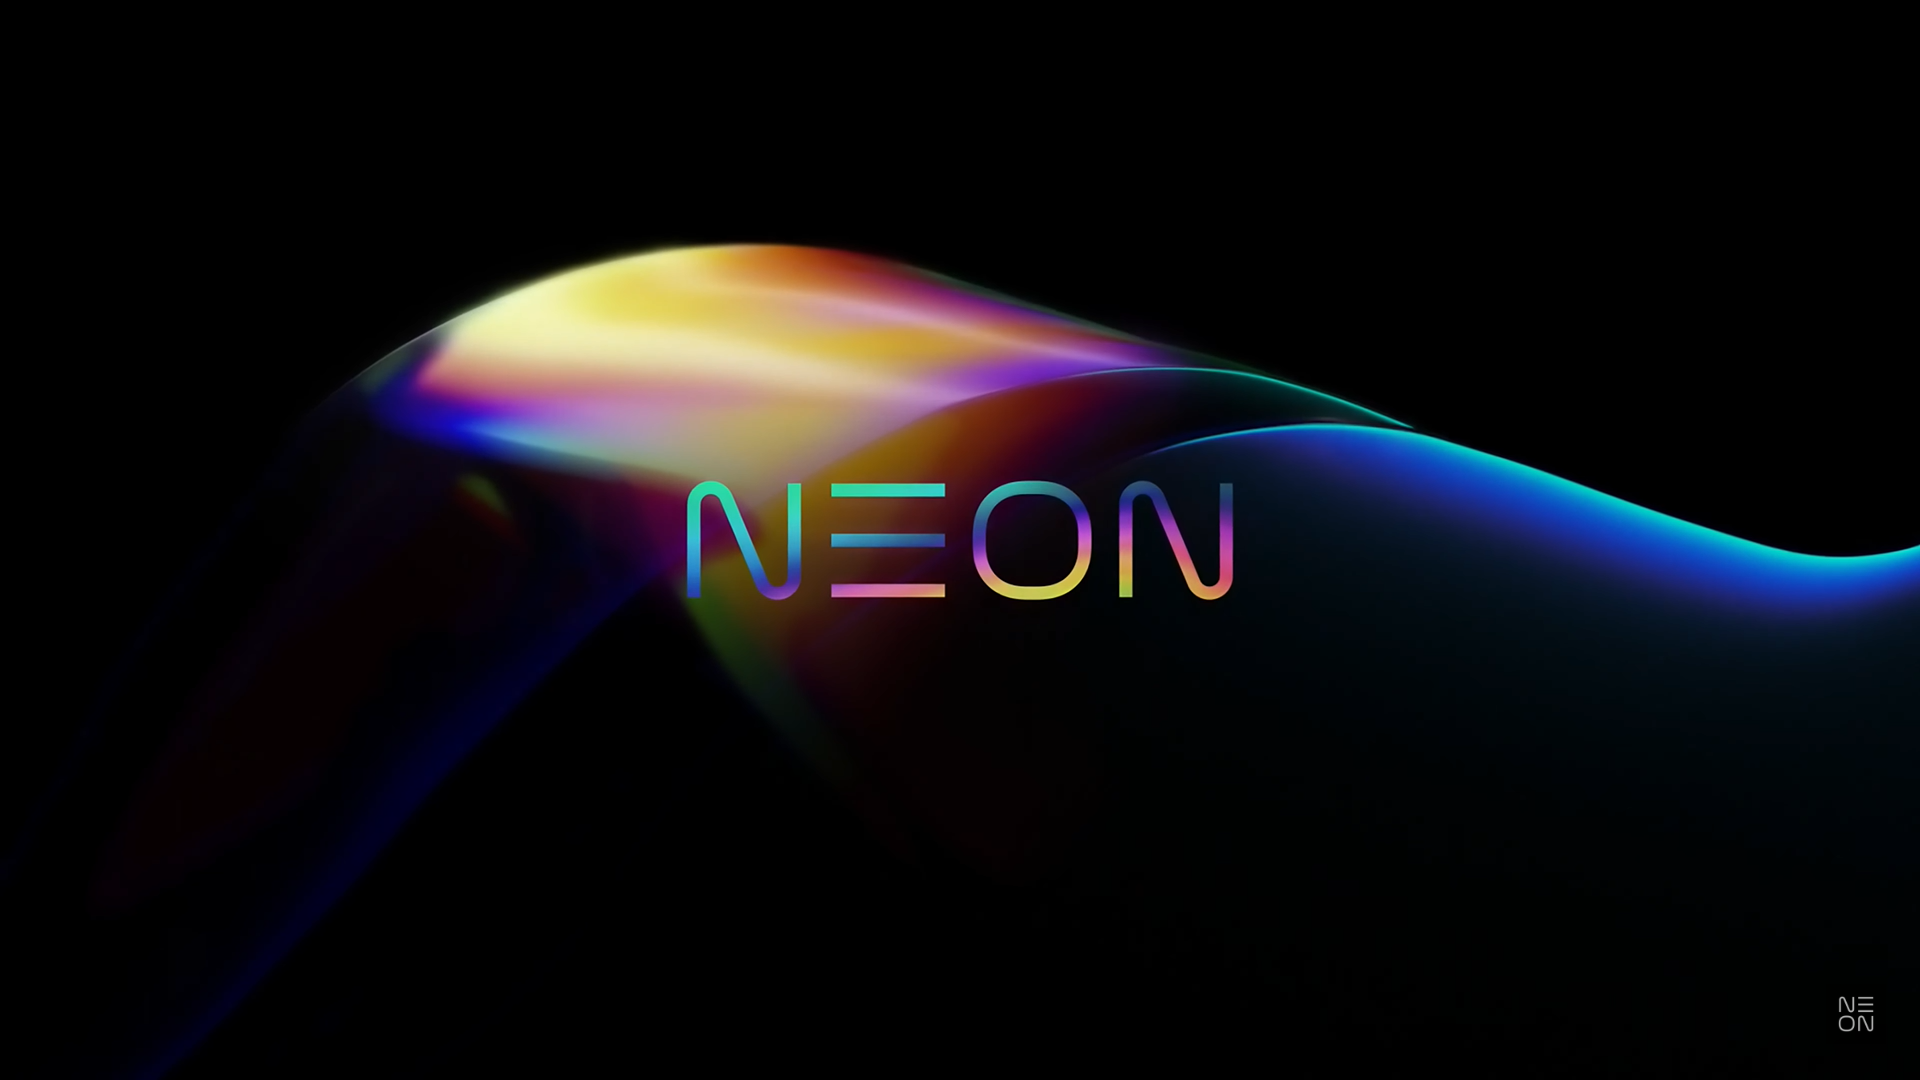 サムスン 人工人間 Neon 発表 すまほん